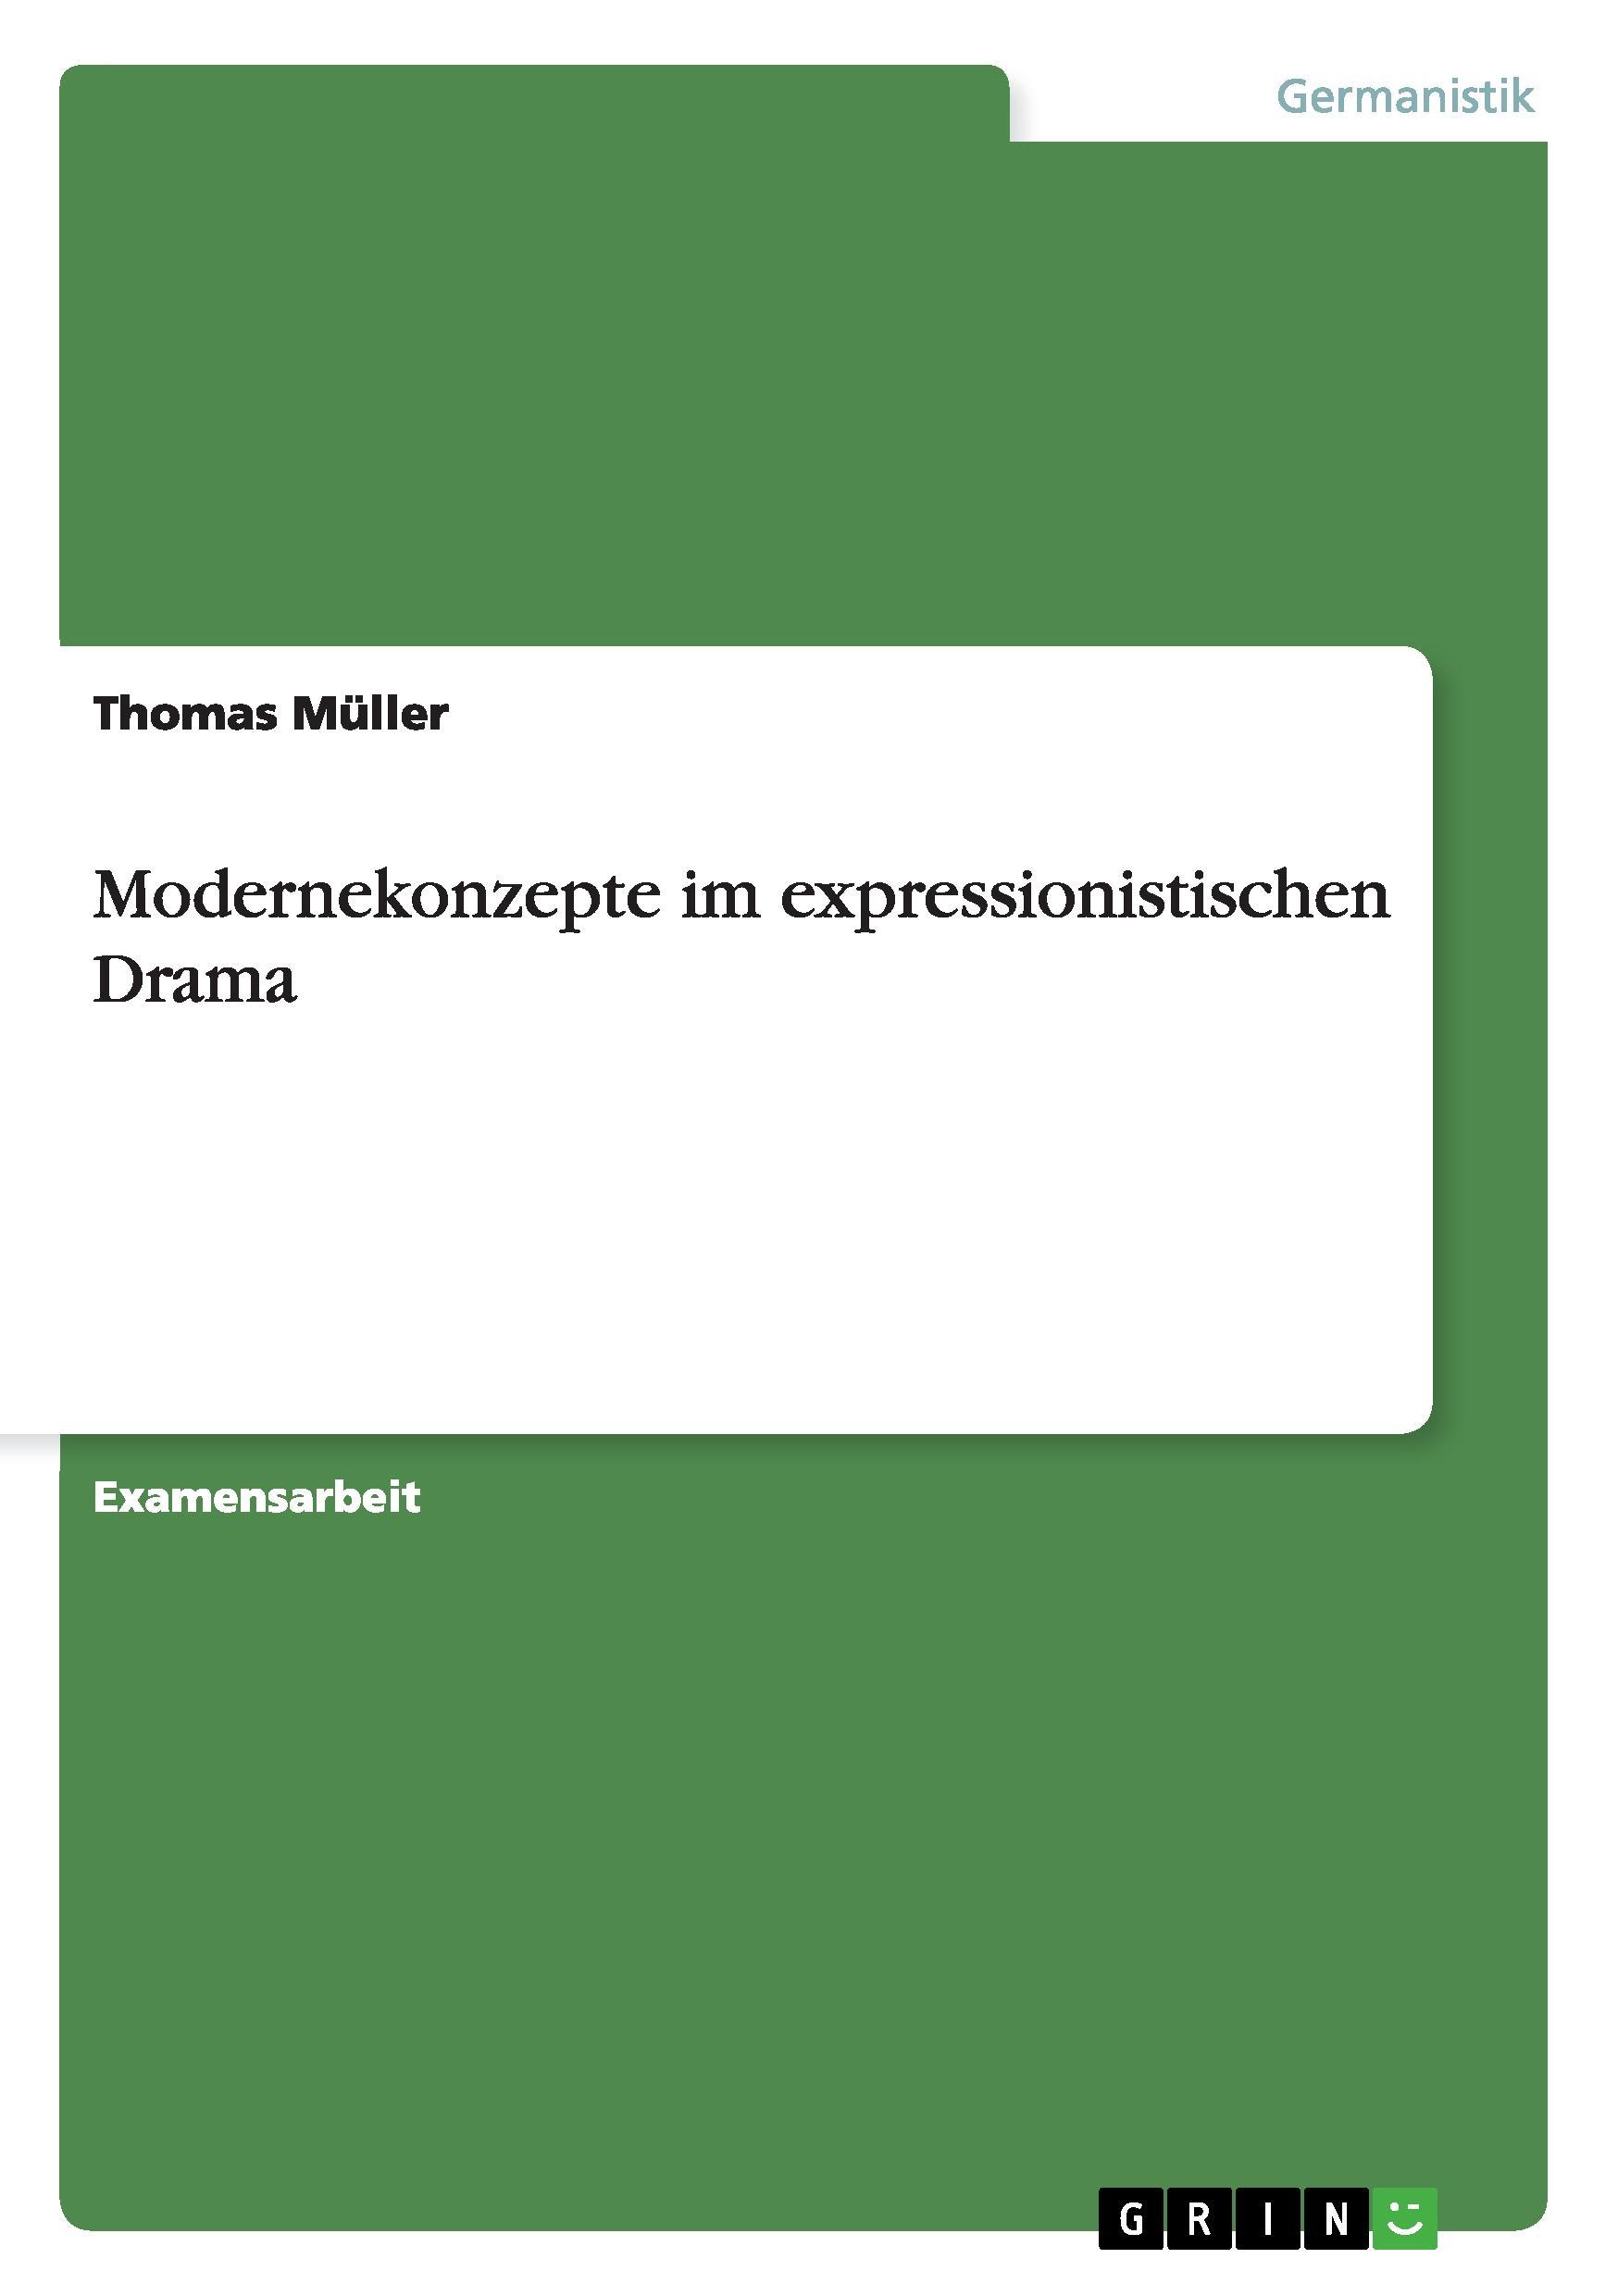 Modernekonzepte im expressionistischen Drama - Mueller, Thomas